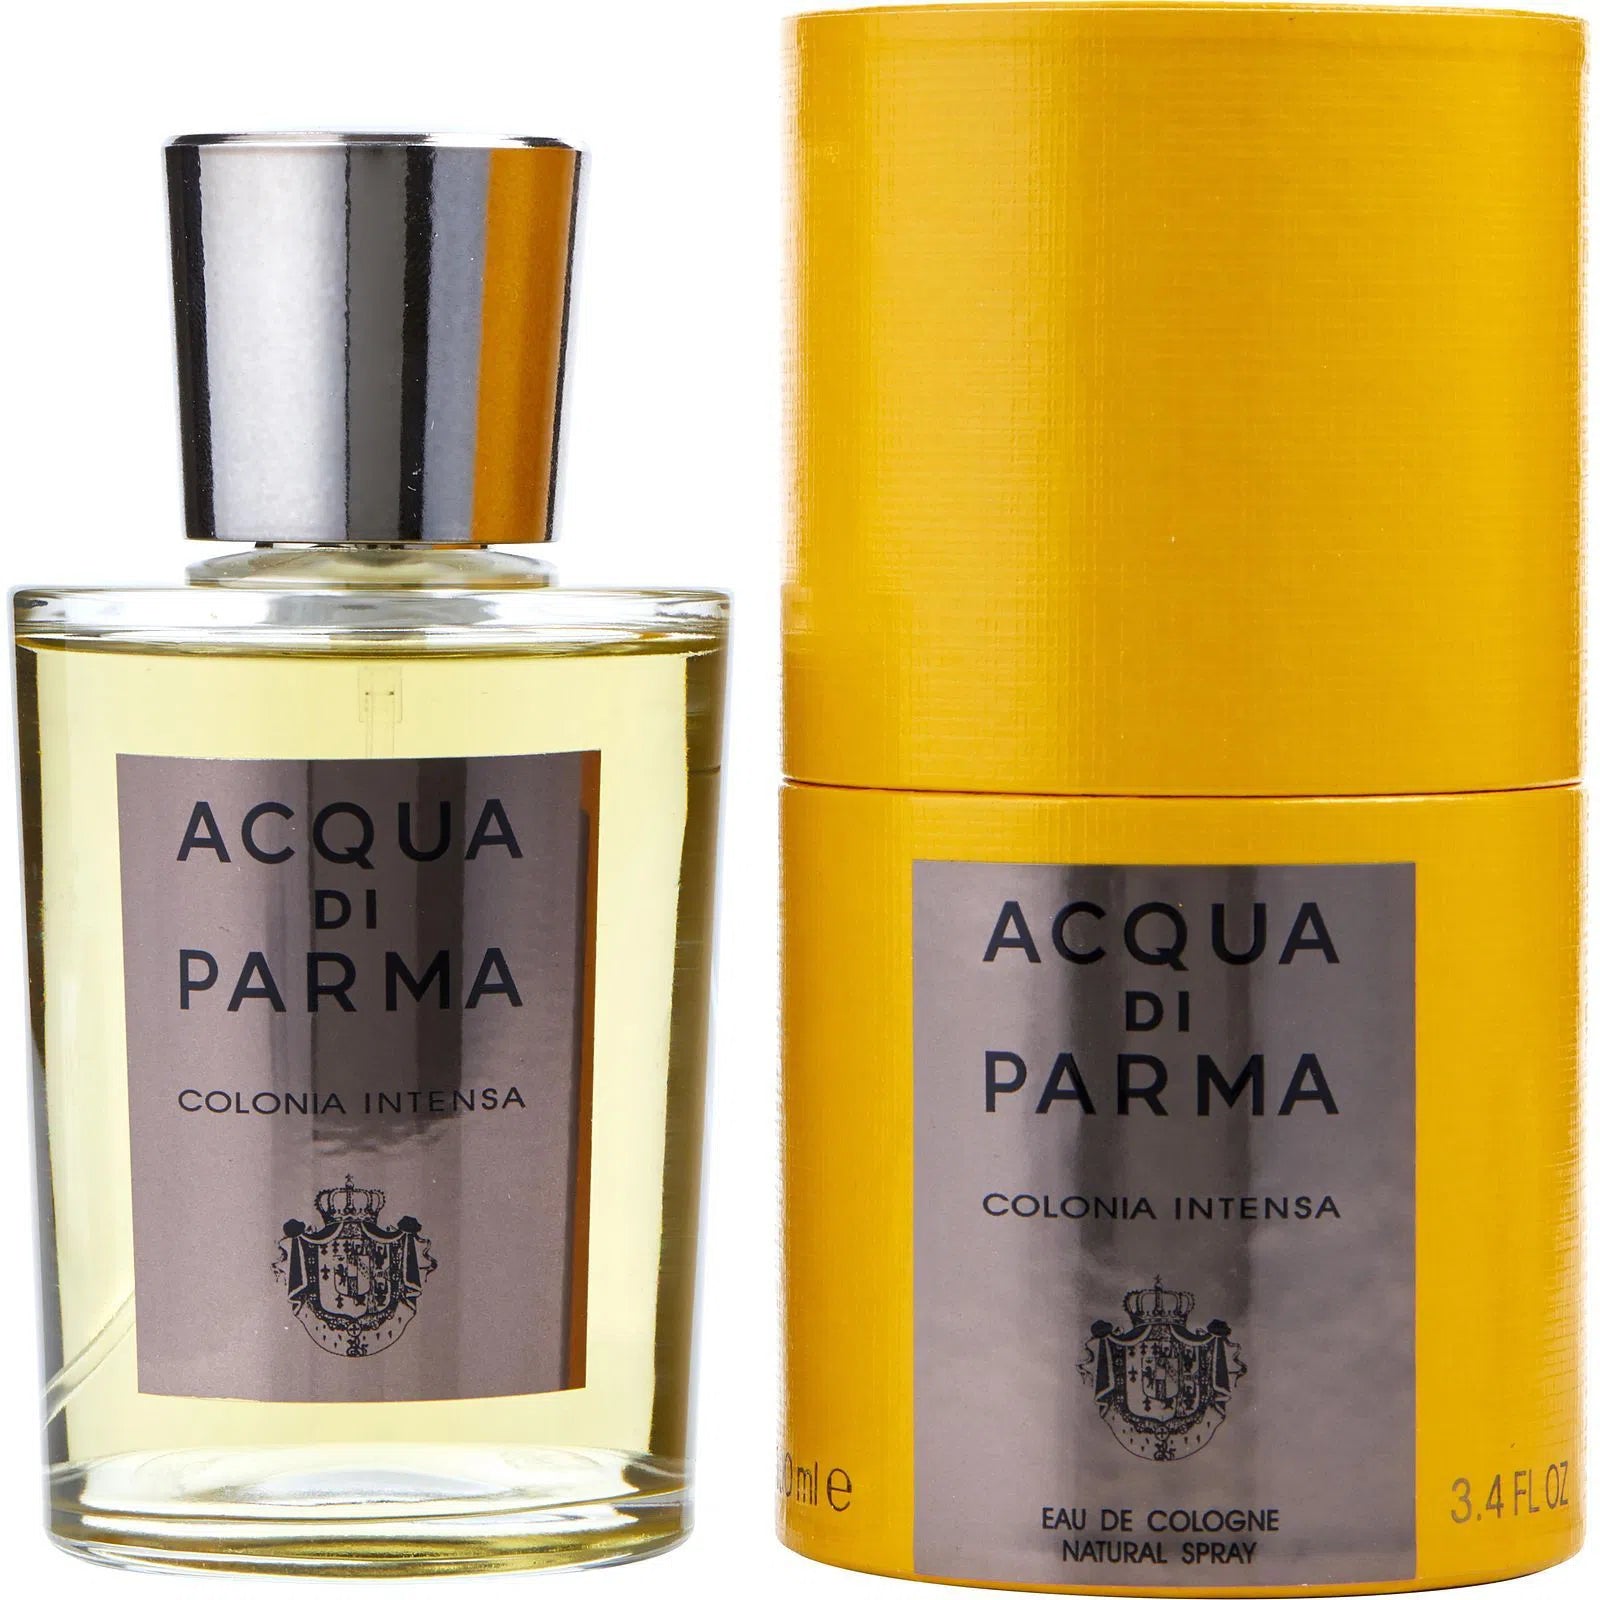 Perfume Acqua Di Parma Colonia Intensa EDC (M) / 100 ml - 8028713210020- Prive Perfumes Honduras